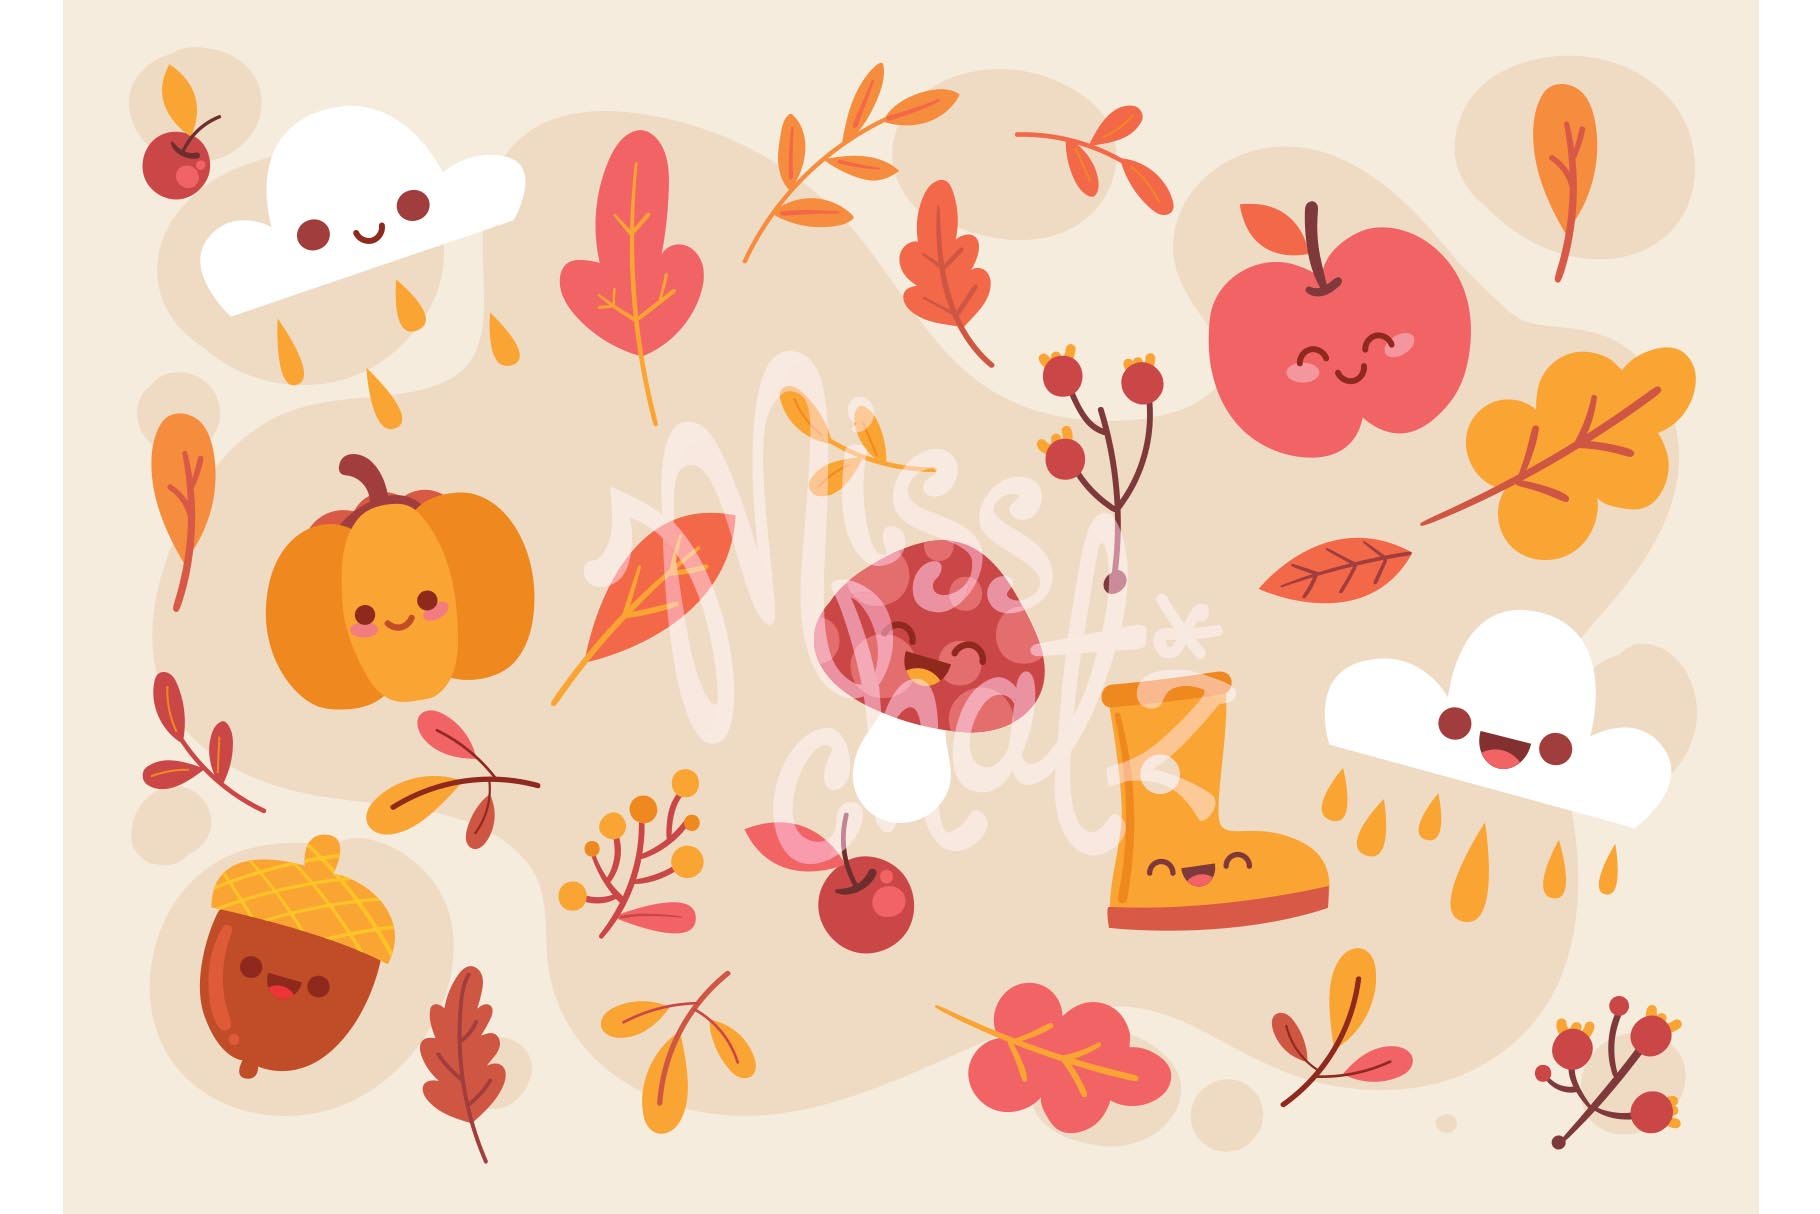 Kawaii Autumn / Fall cover image.